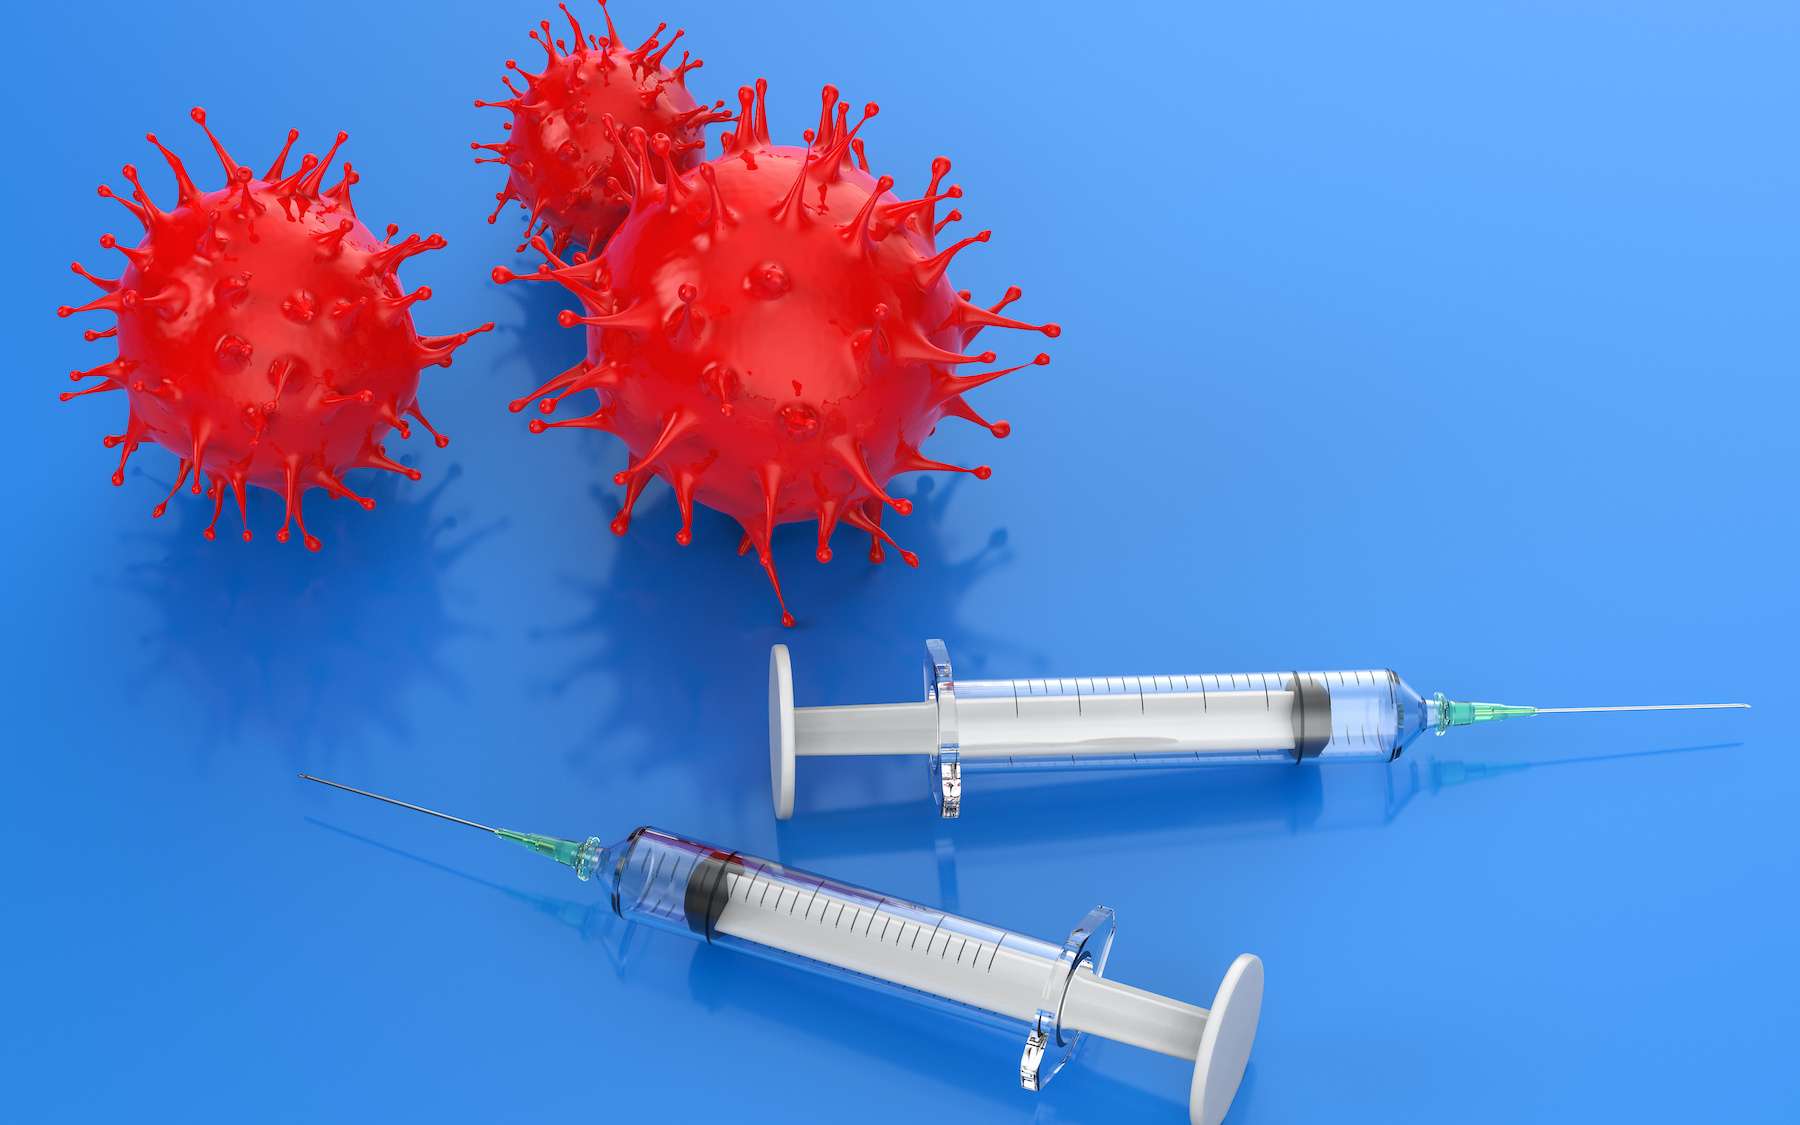 Le vaccin contre la grippe pourrait protéger du coronavirus, selon une étude